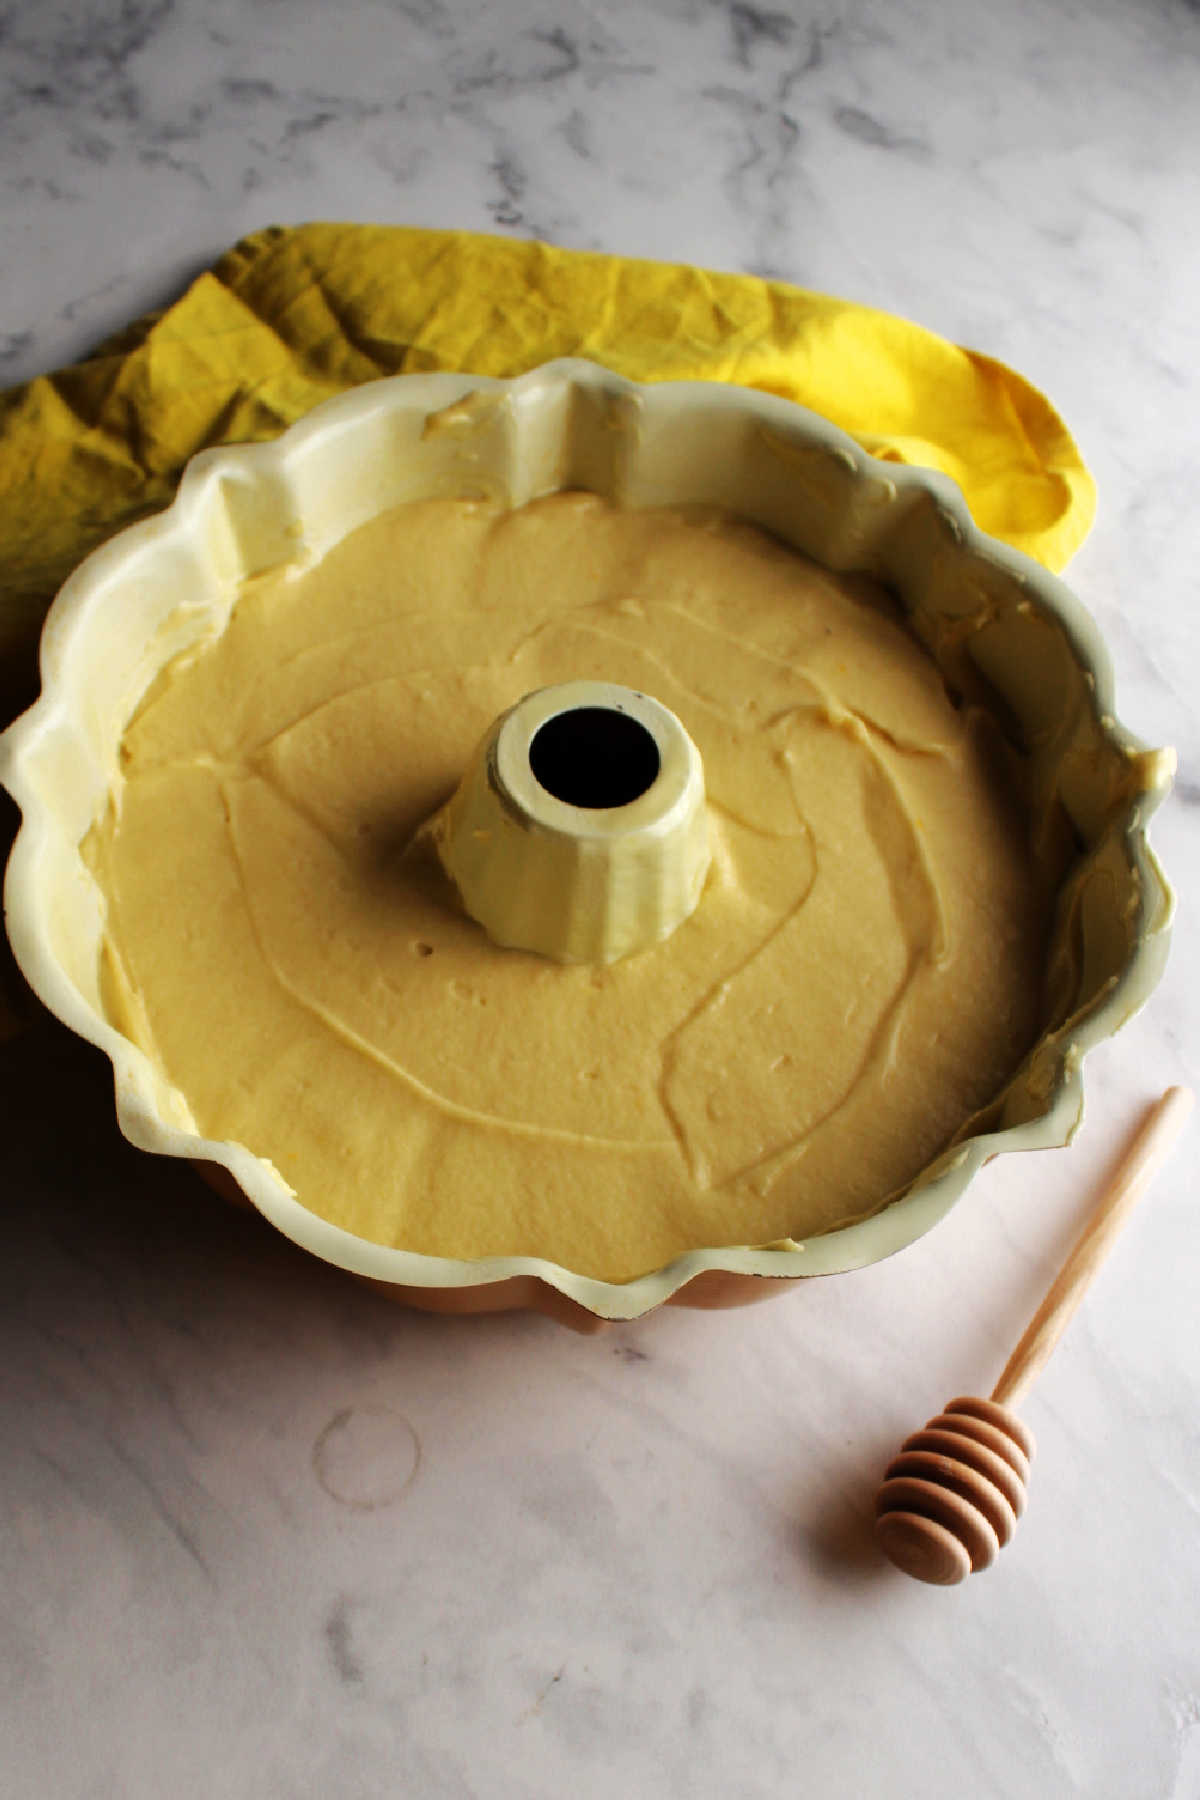 Honey lemon cake batter in bundt pan ready to bake.